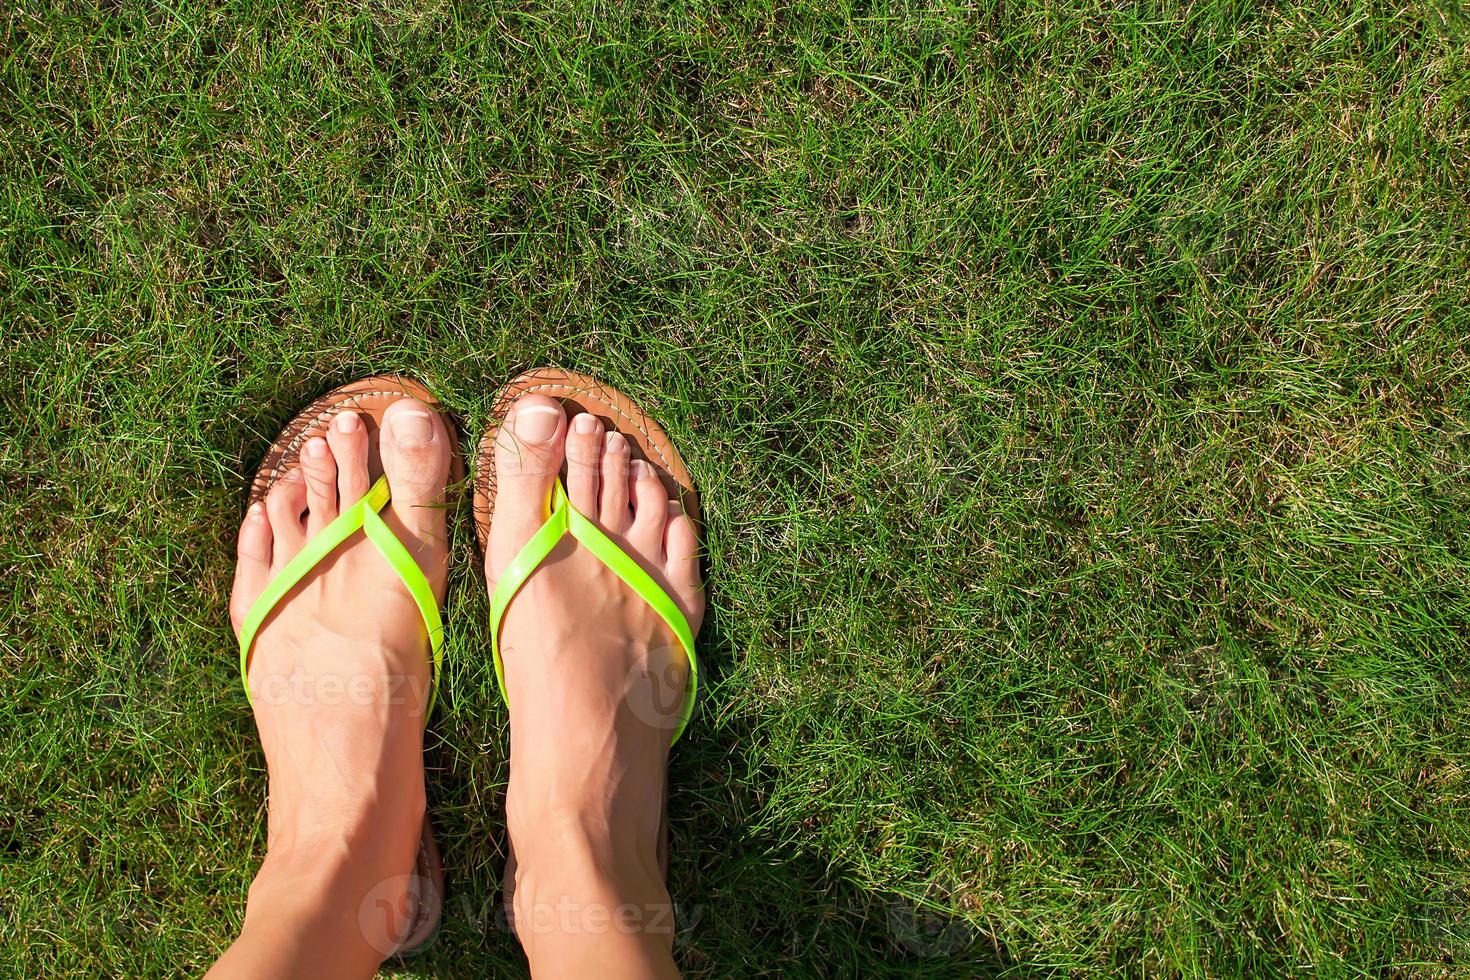 closeup de chinelos brilhantes e pernas na grama verde foto